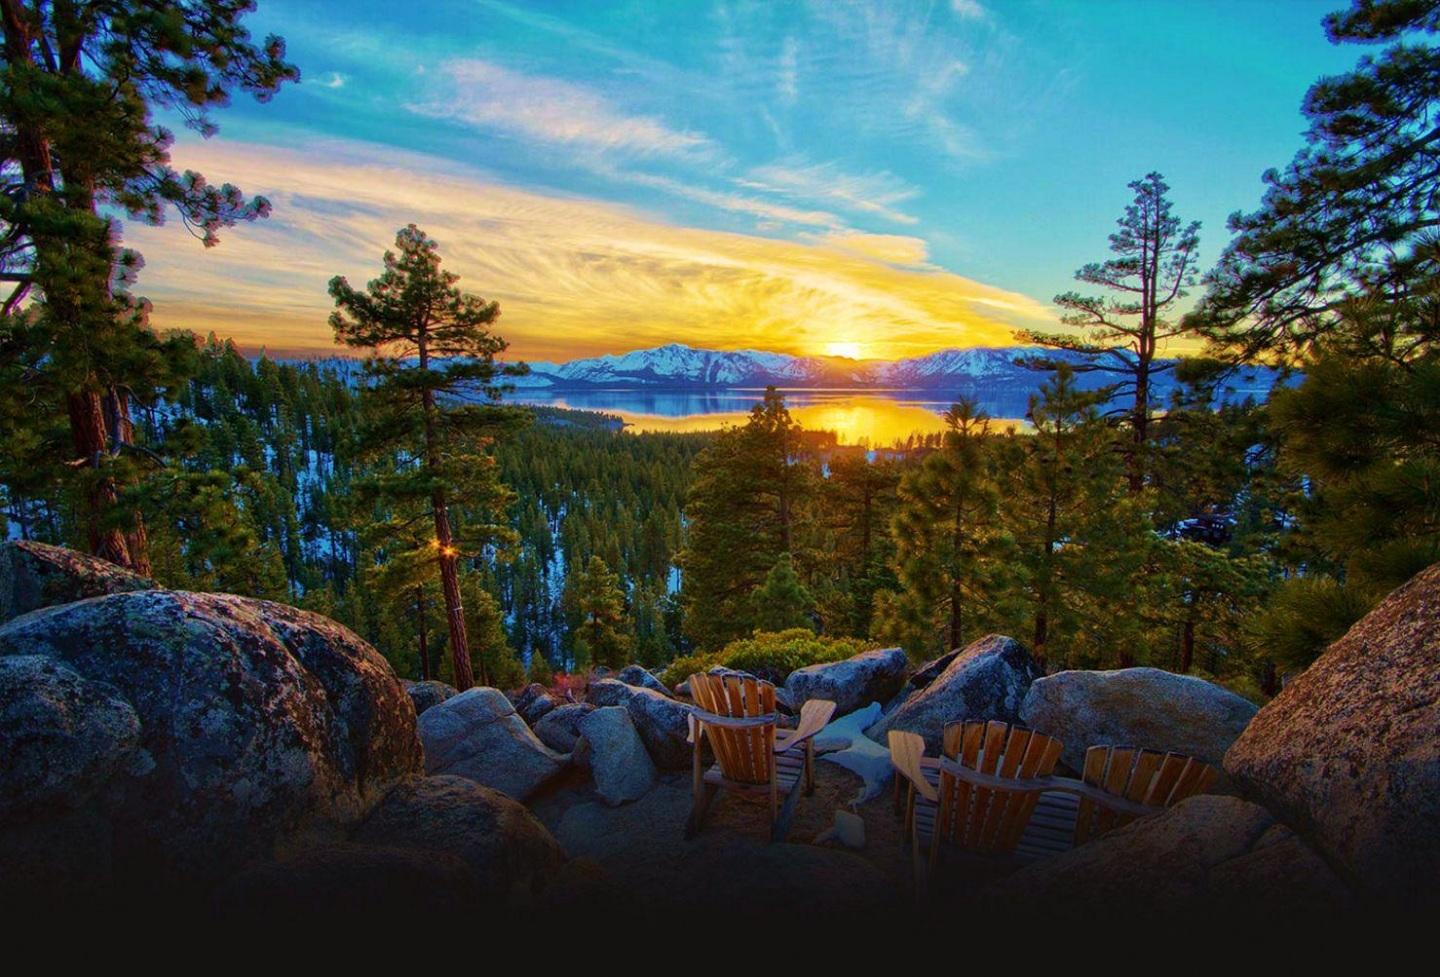 Lake Tahoe Summer Sunset Fondos De Pantalla Im Genes